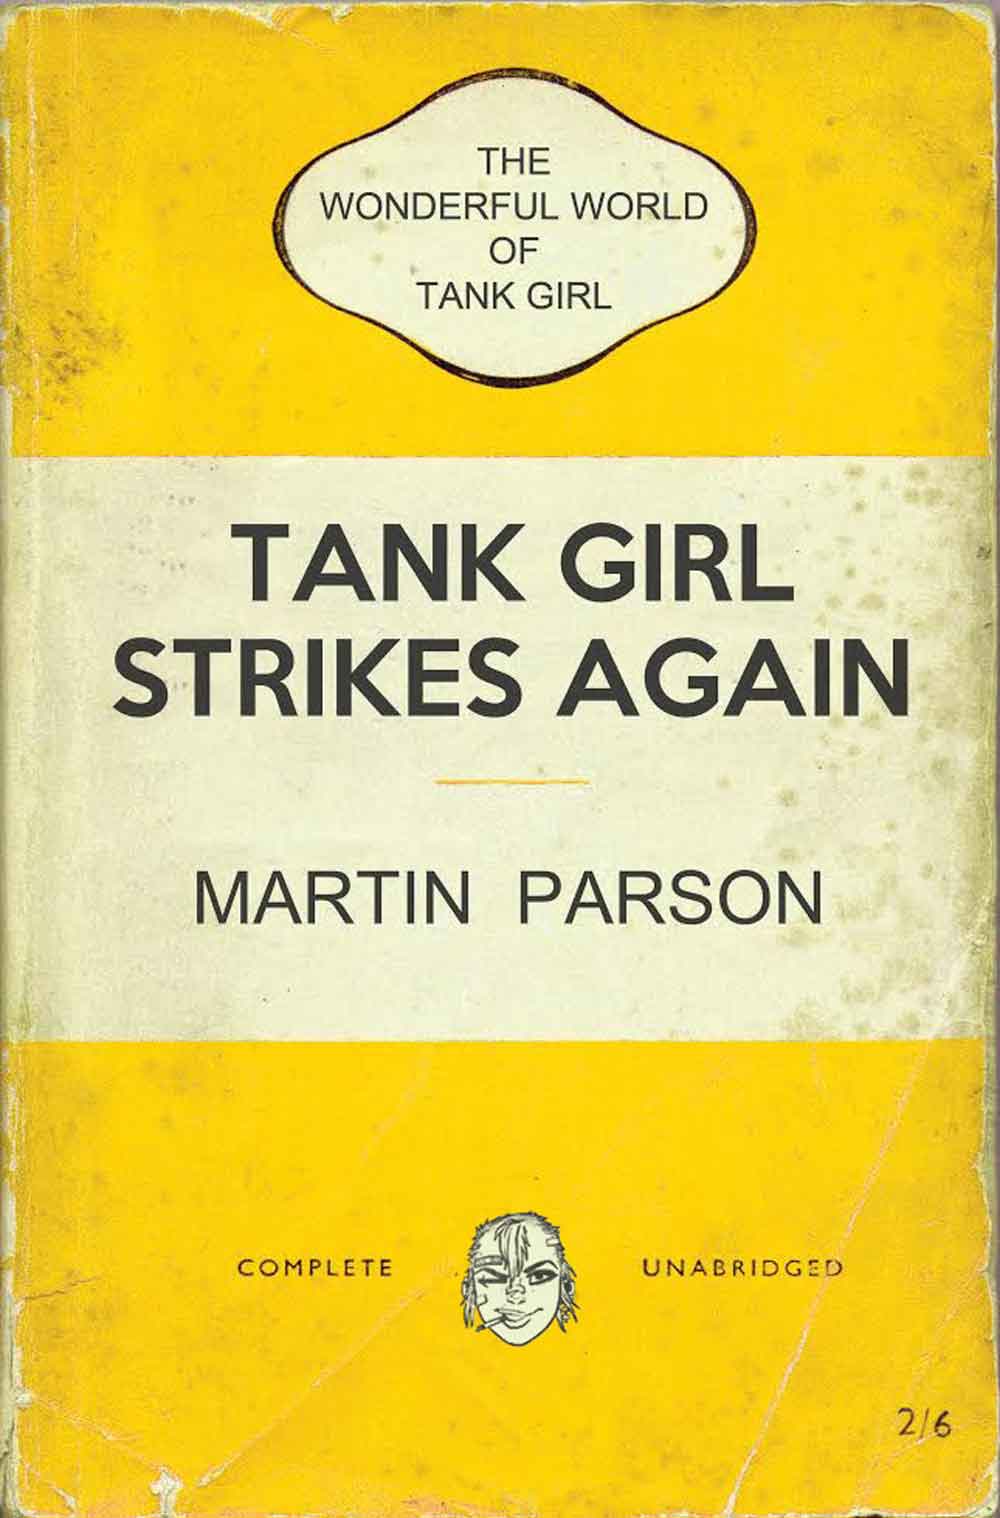 Wonderful-World-Tank-Girl-Cover-C-Alan-Martin-Bookshelf-Variant.jpg